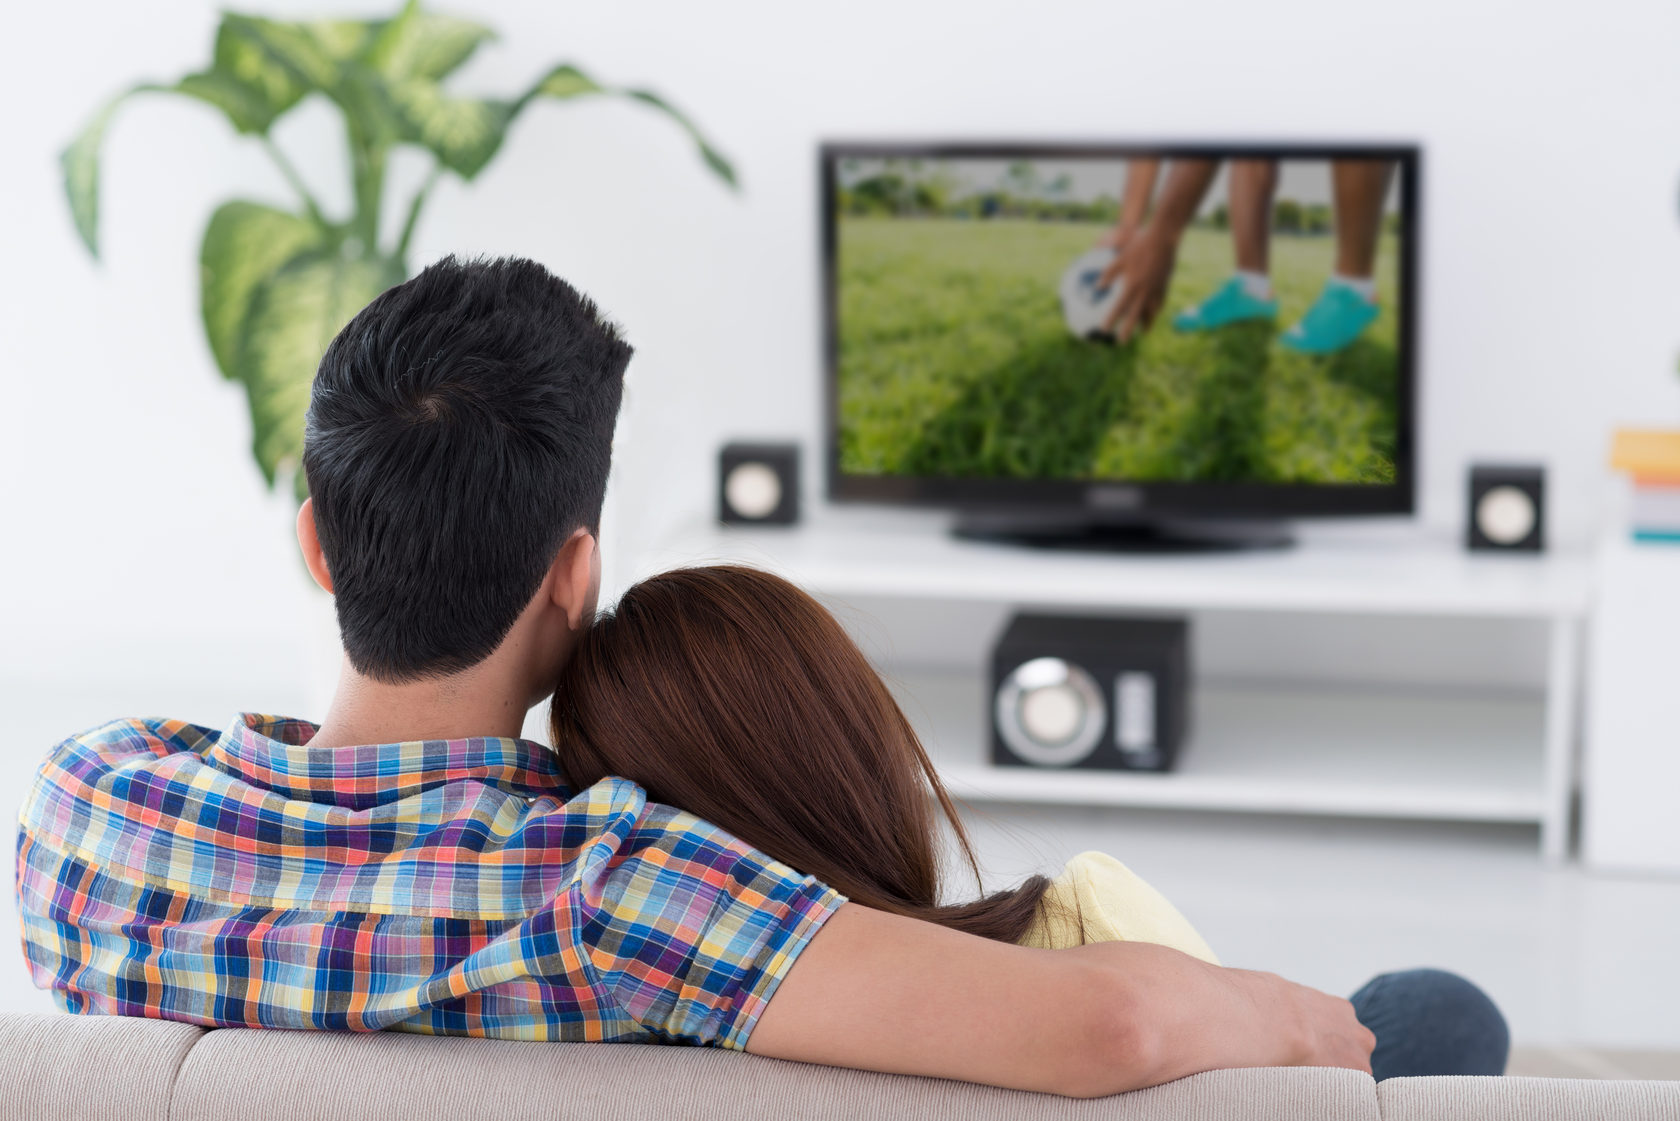 Телевизор знаешь. Пара перед телевизором. Девушка перед телевизором. Мужчина у телевизора. Парень с девушкой перед телевизором.